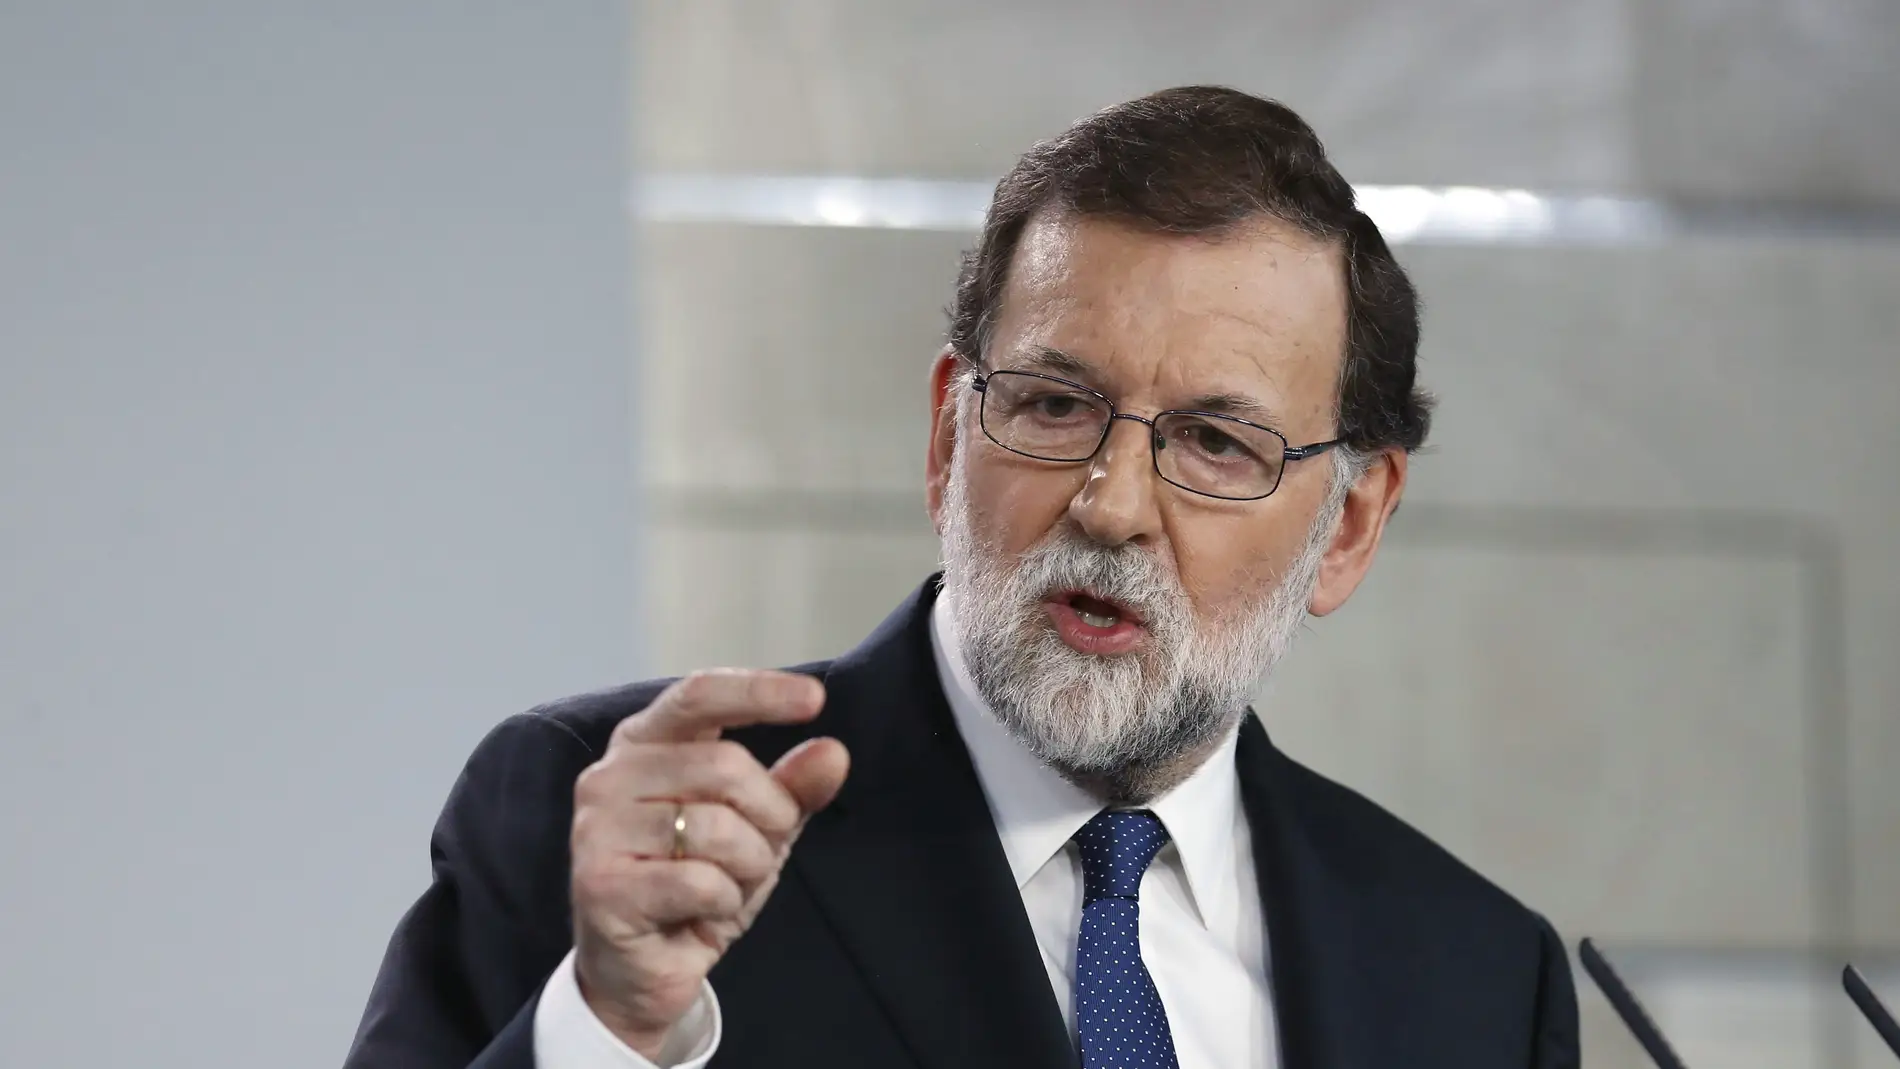 El presidente del gobierno Mariano Rajoy compareció para explicar la aplicación del Artículo 155 de la Costitución